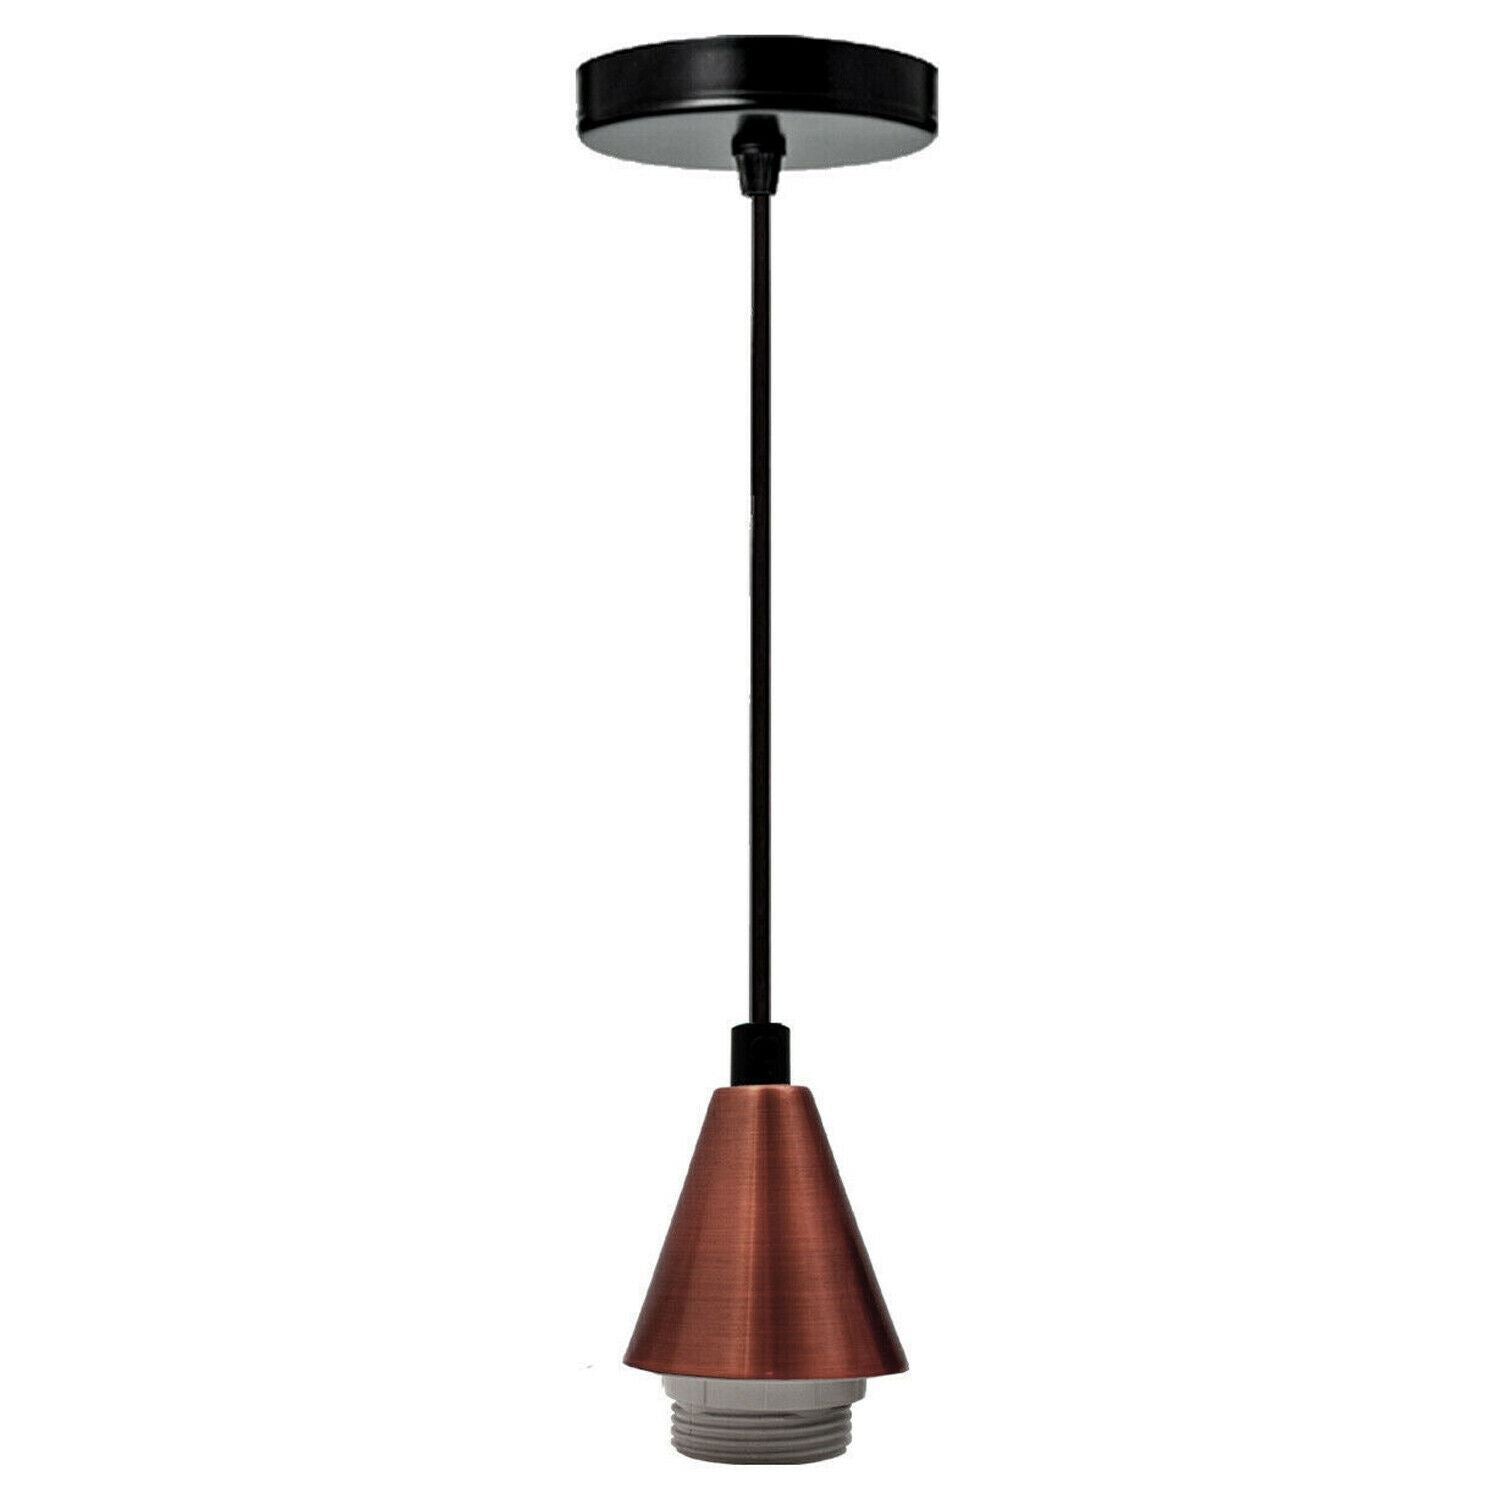 1M E27 Screw Lamp Bulb Holder Pendant Lamp Holder for Bedroom, Dining Room and Kitchen